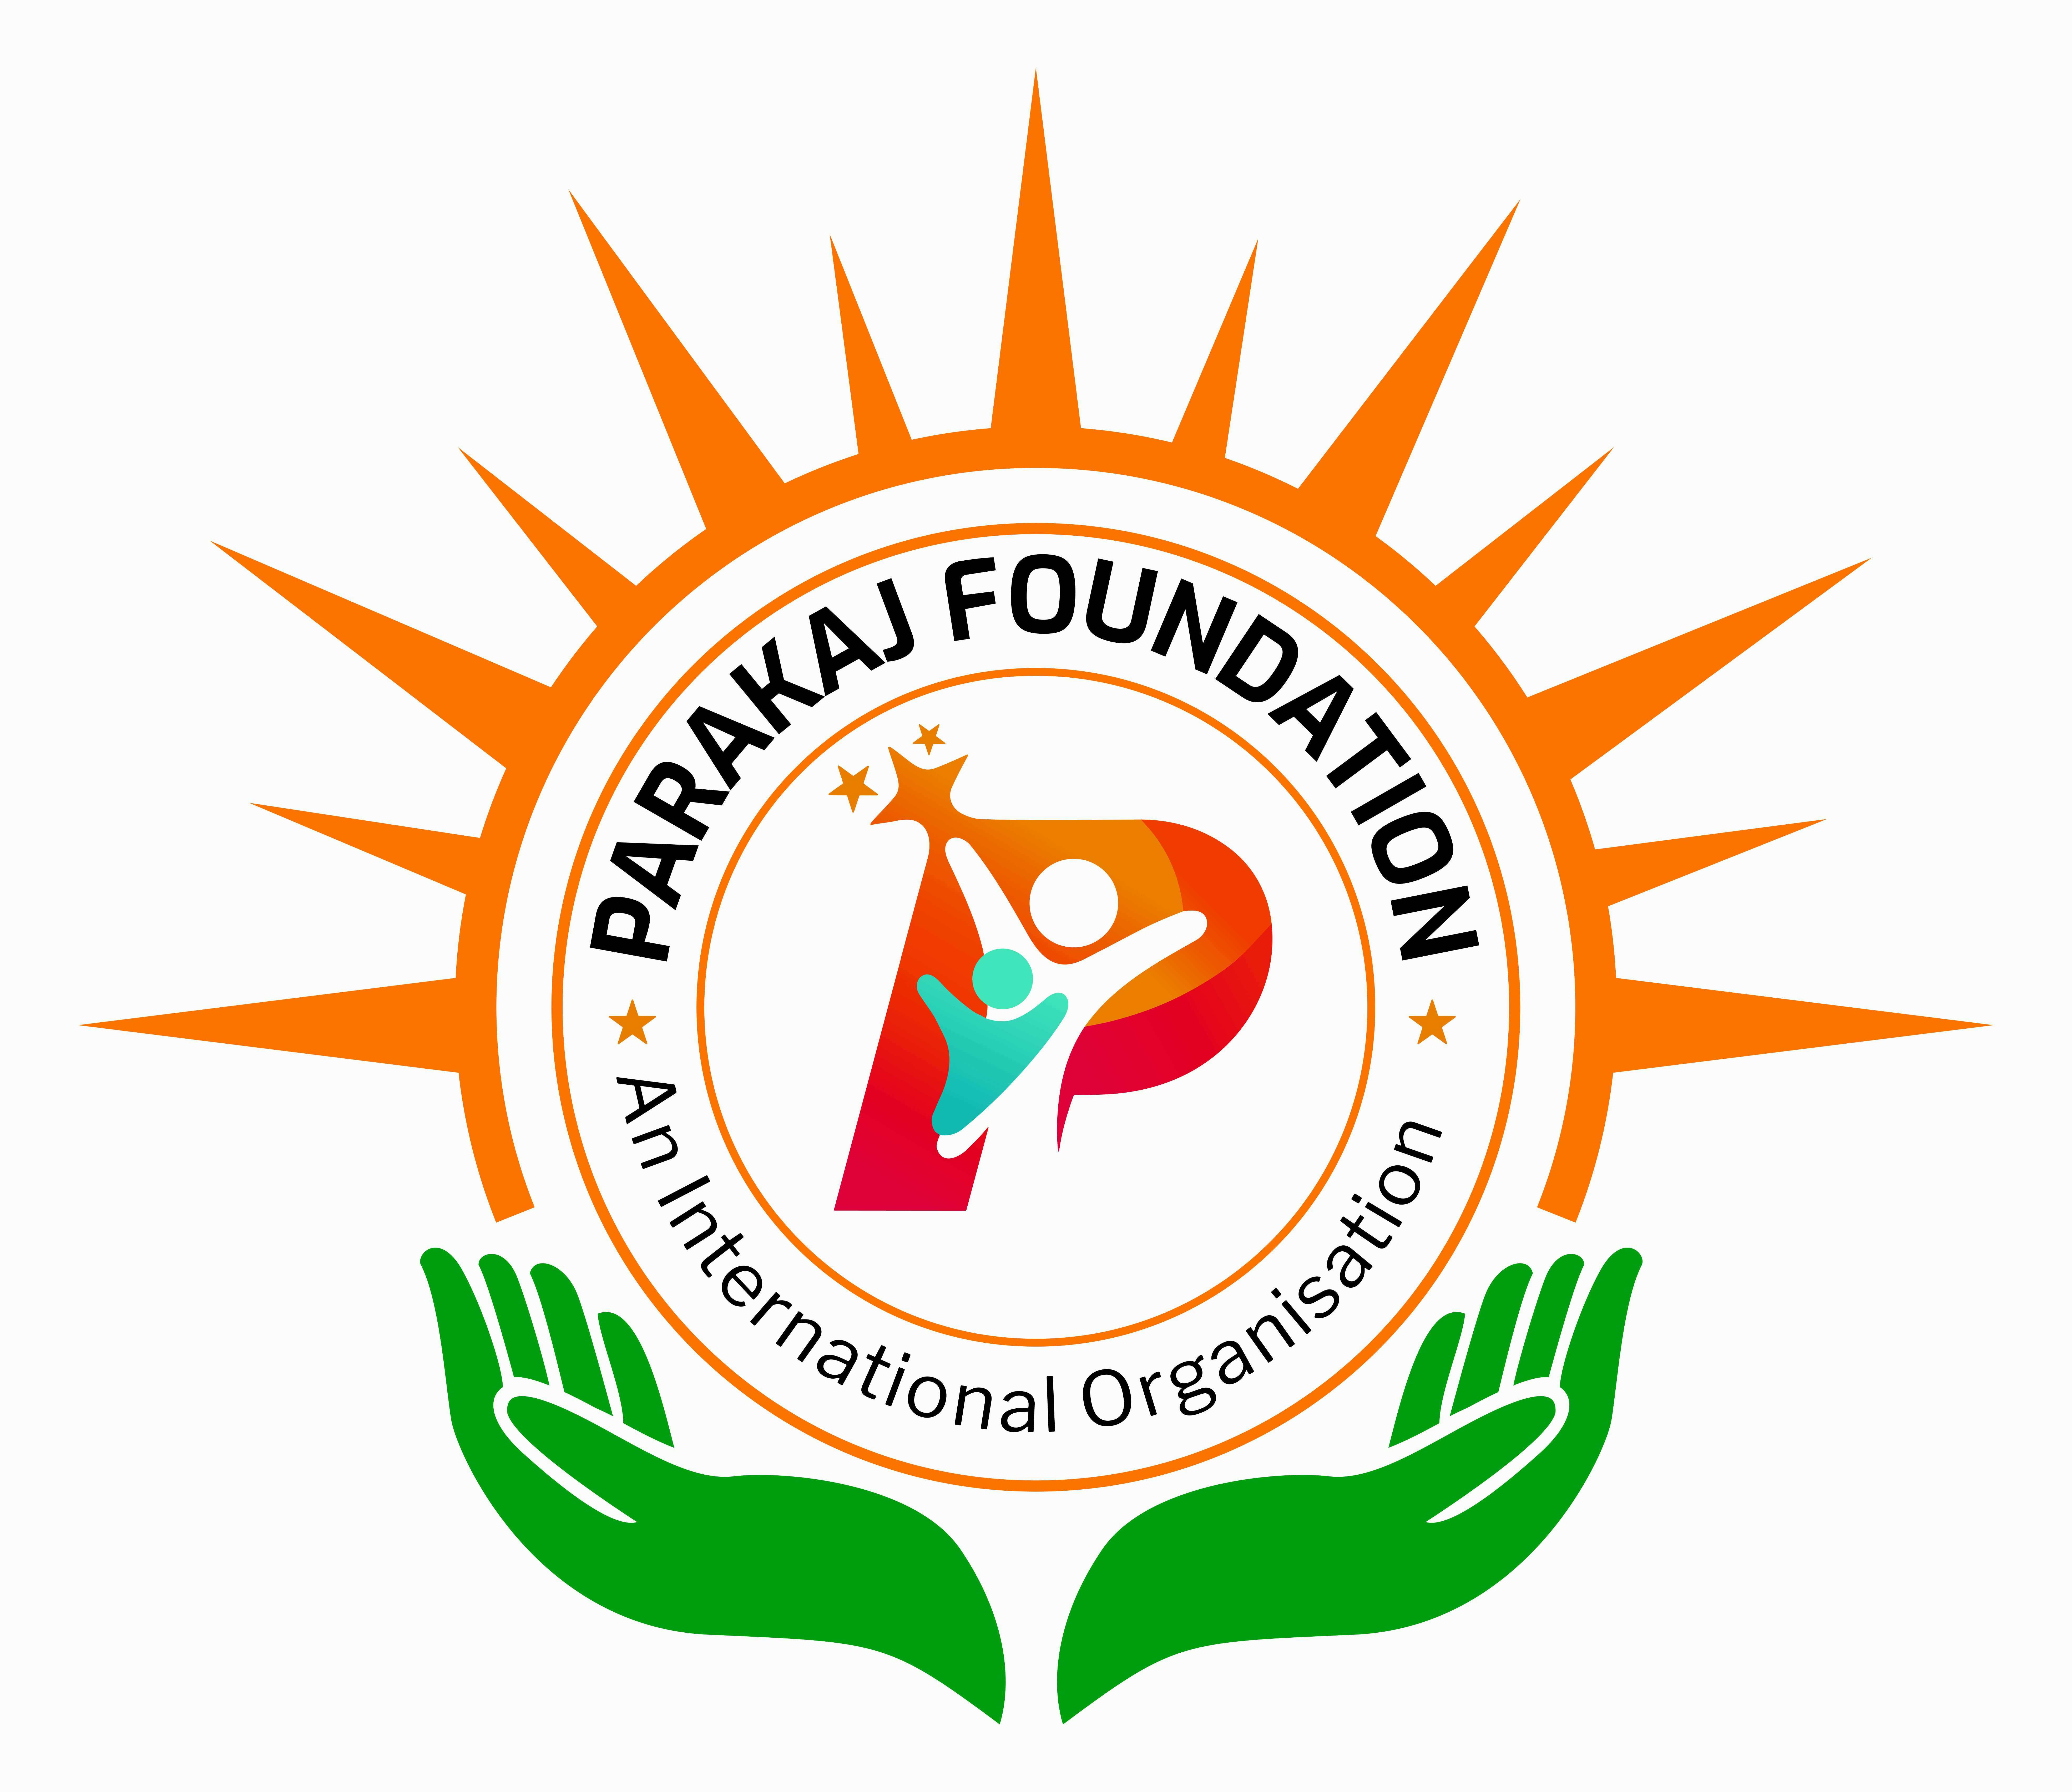 Parakaj-Foundation